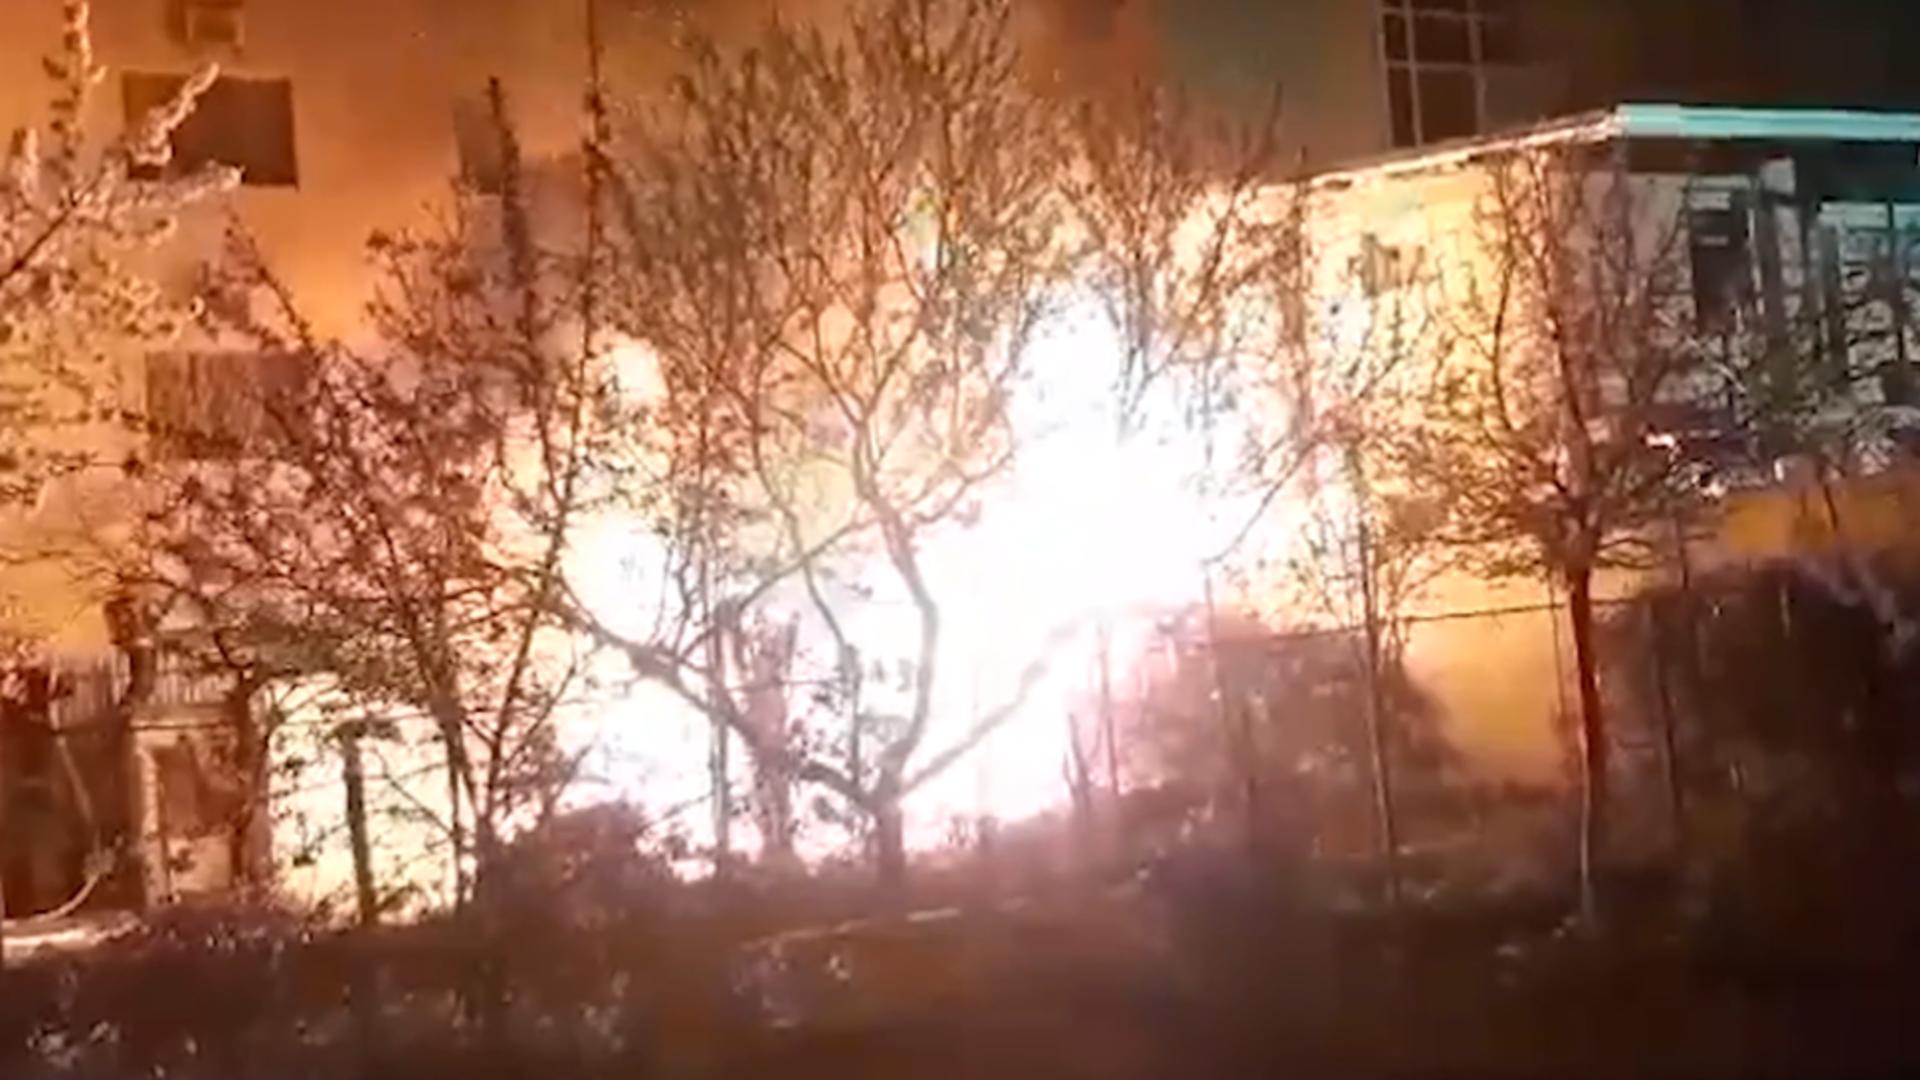 Incendiu puternic la o anexă din apropierea unui spital din Arad. Panică uriașă printre pacienți / Captură video